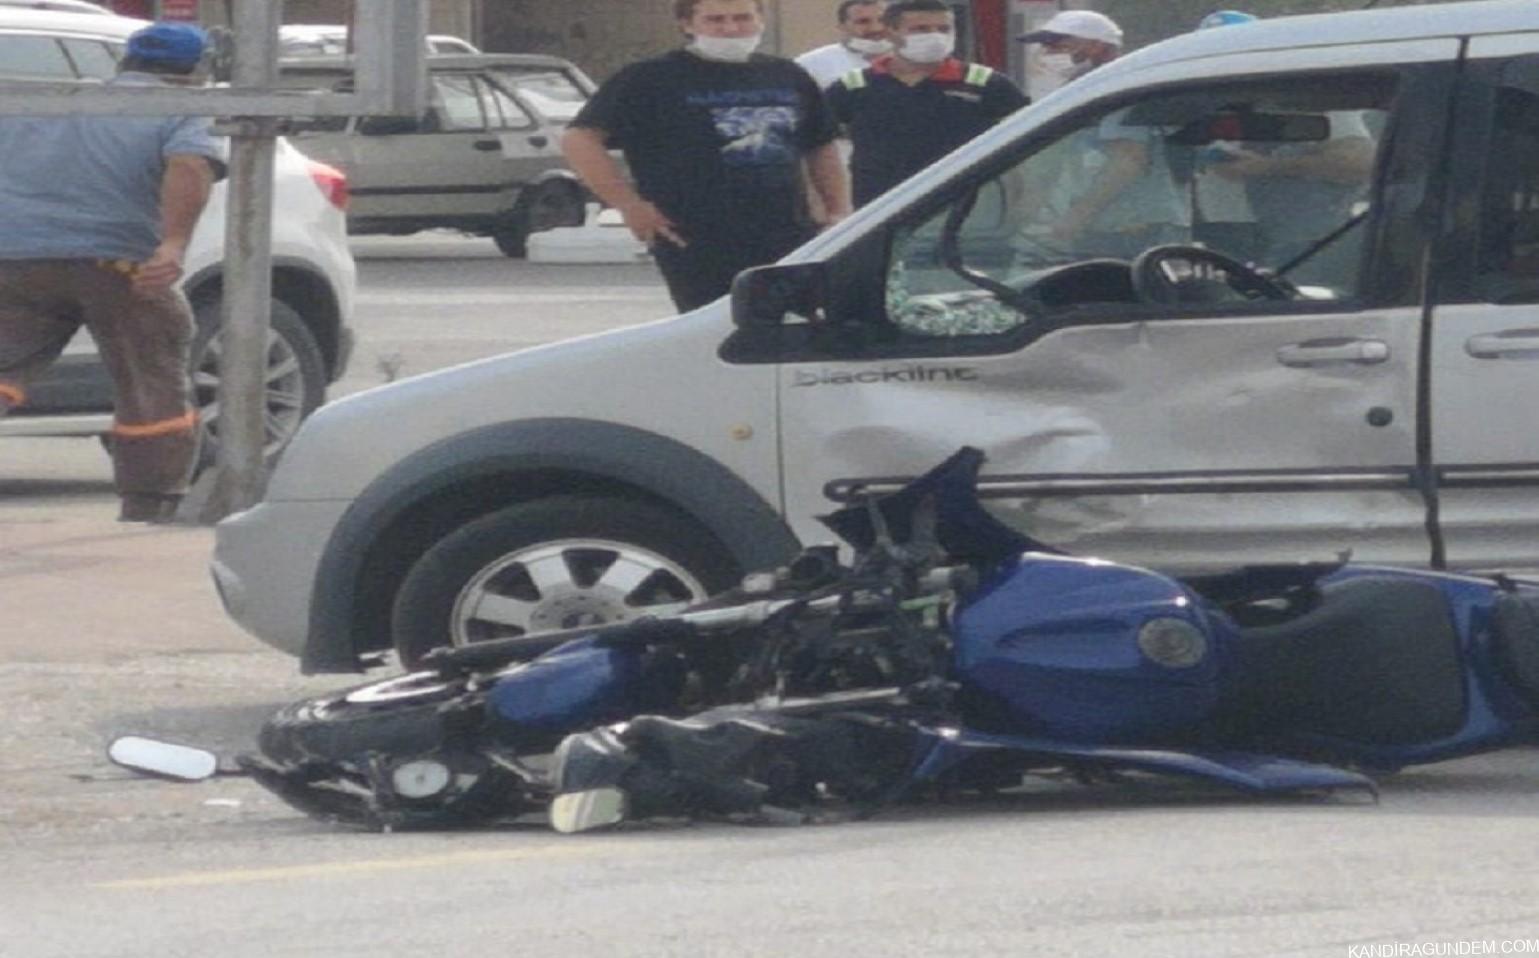 Kandıra’da Meydana Gelen Motosiklet Kazası Kameralara Böyle Yansıdı